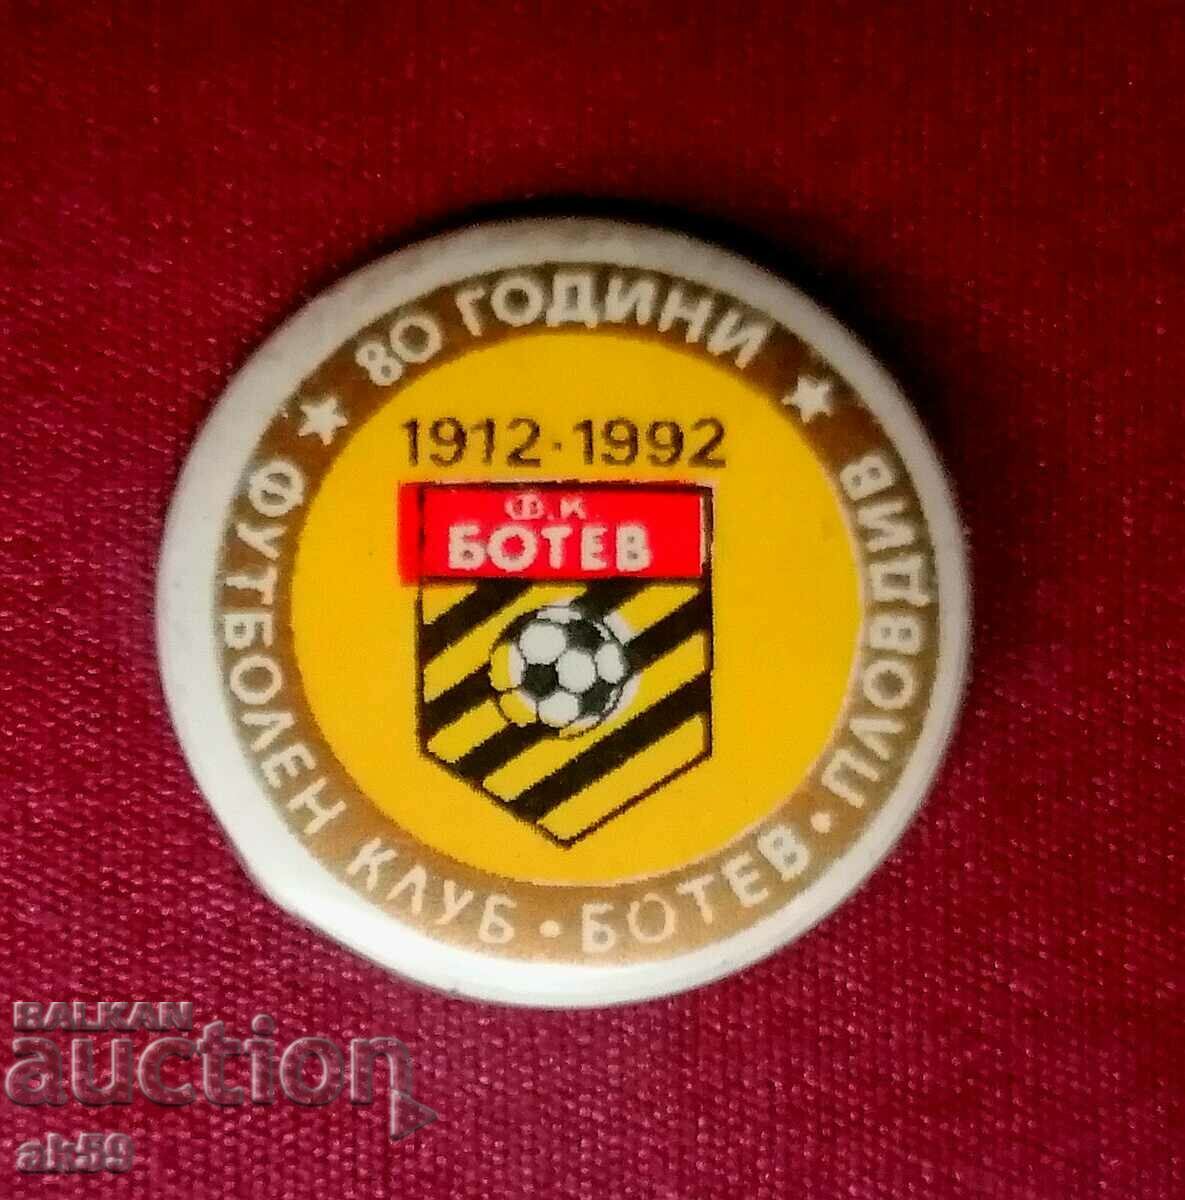 σήμα ποδοσφαίρου "80 χρόνια FC Botev Plovdiv 1912-1992"